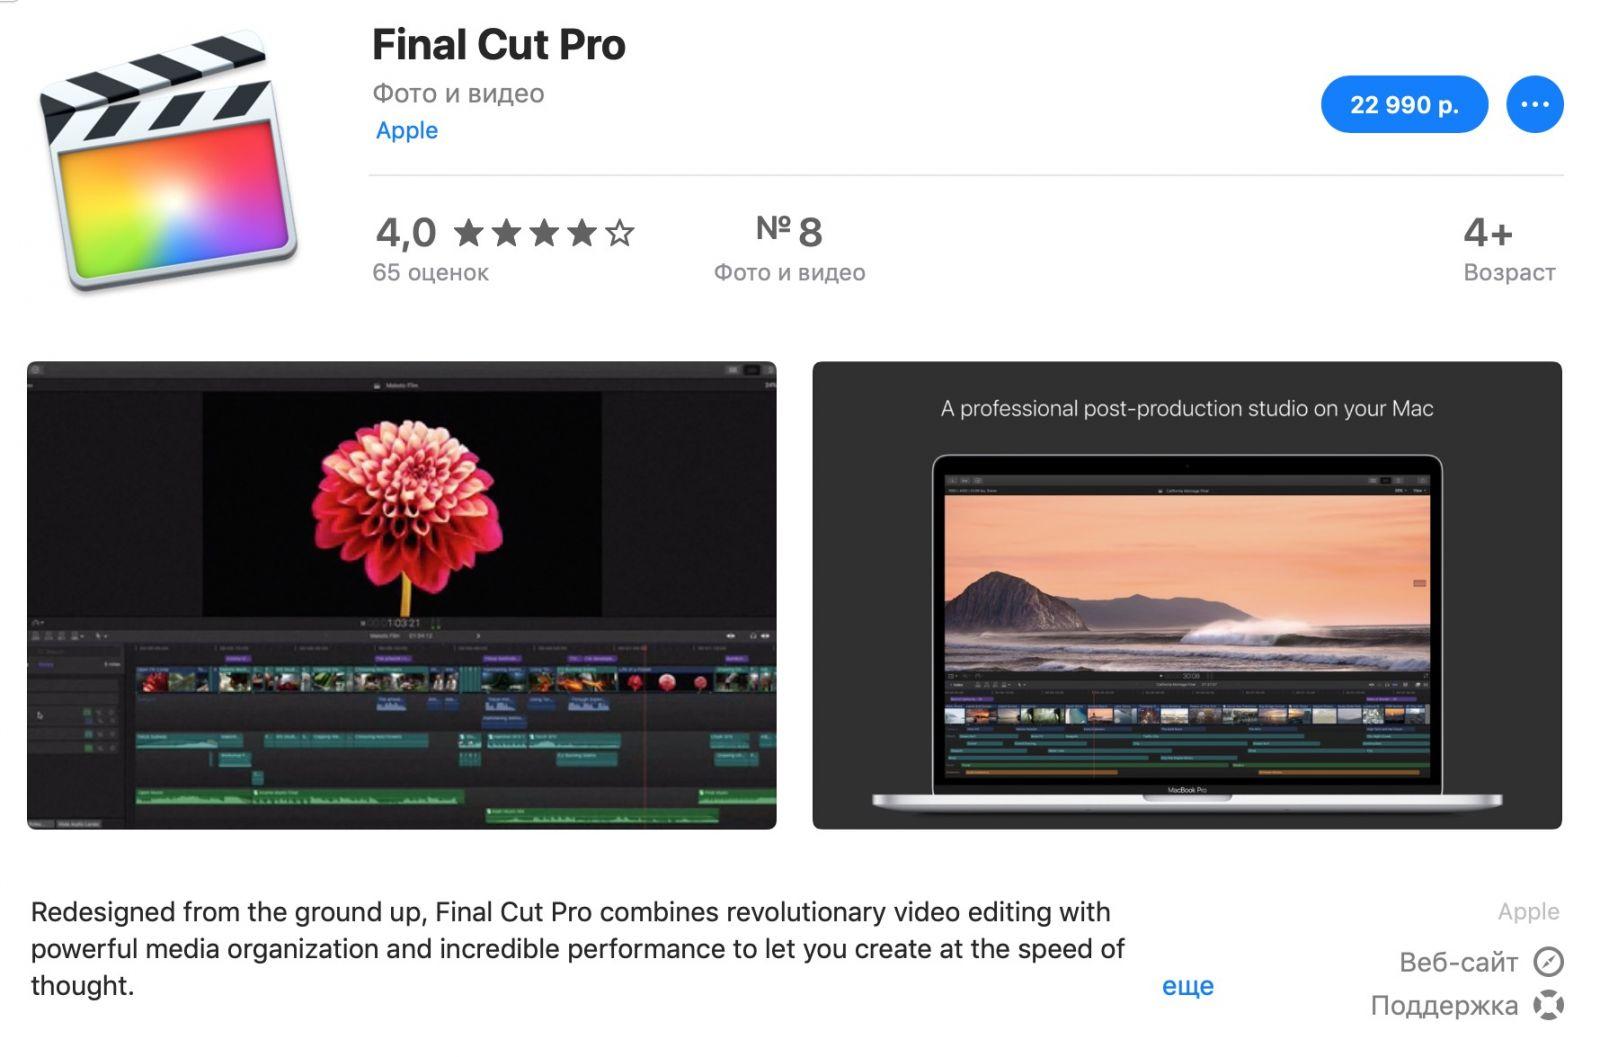 В Final Cut Pro X и Logic Pro X появился 90-дневный пробный период (final cut pro)